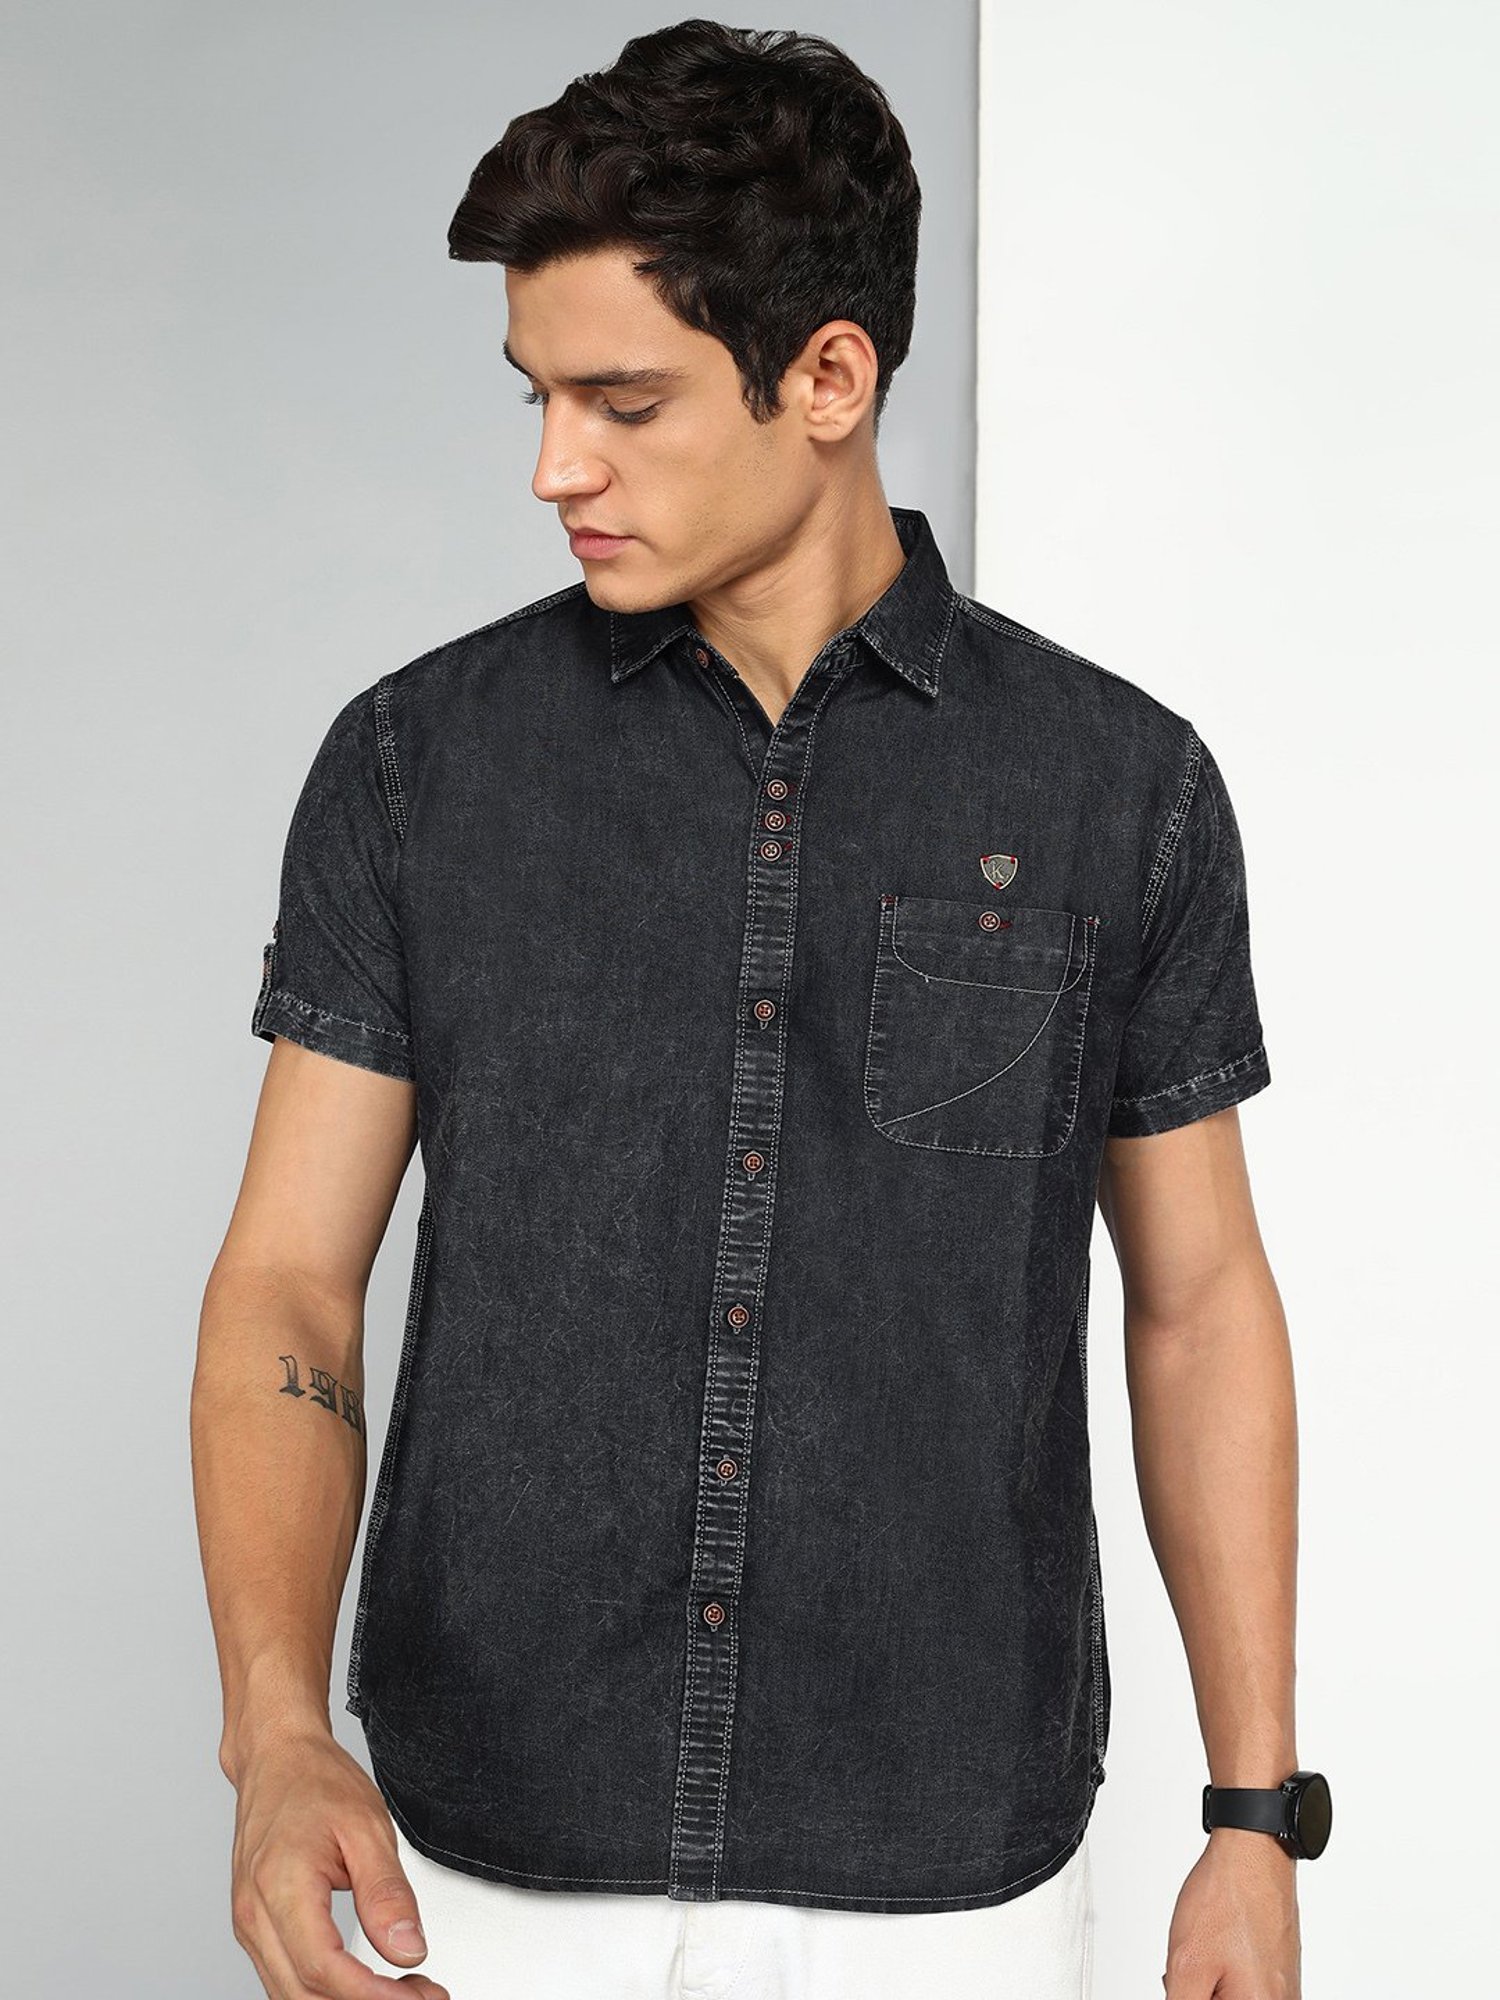 TOPMAN Denim Shirt Men's Medium Longer Length Black Button Down Short Sleeve  | eBay